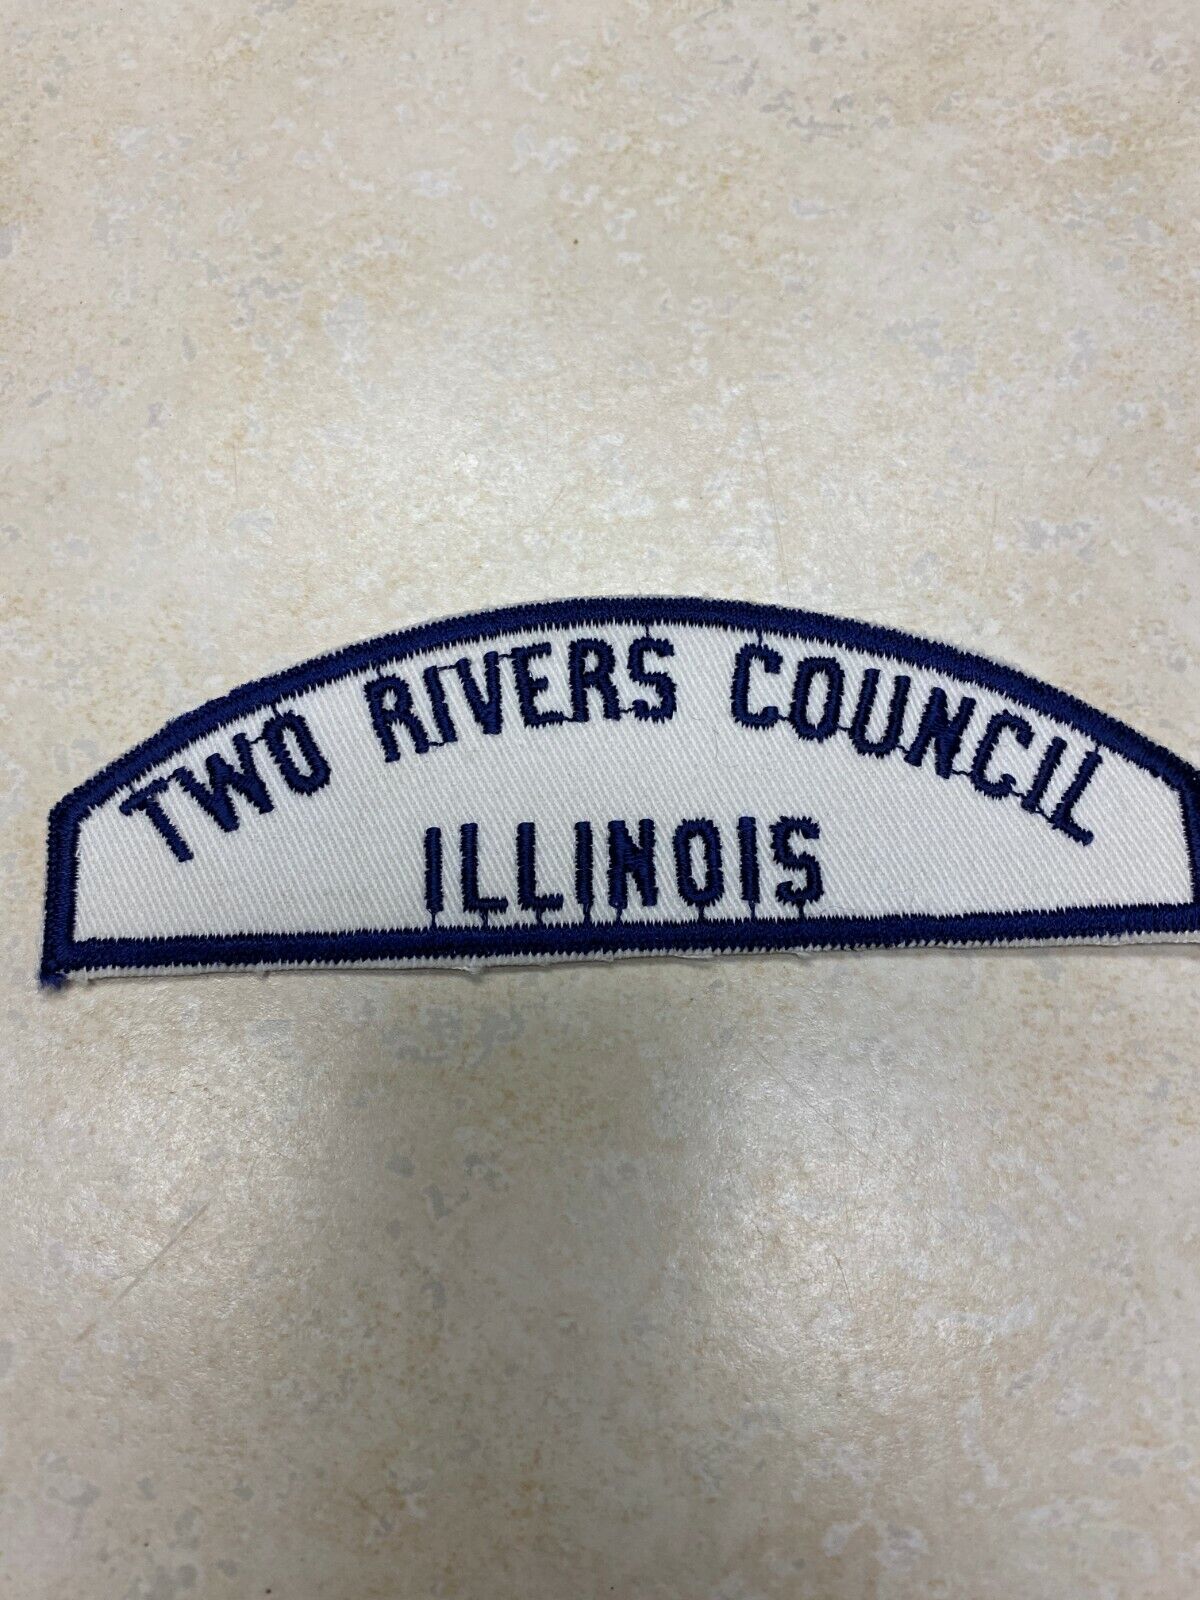 Two Rivers Council Sea Scout White & Blue WBS Council Strip